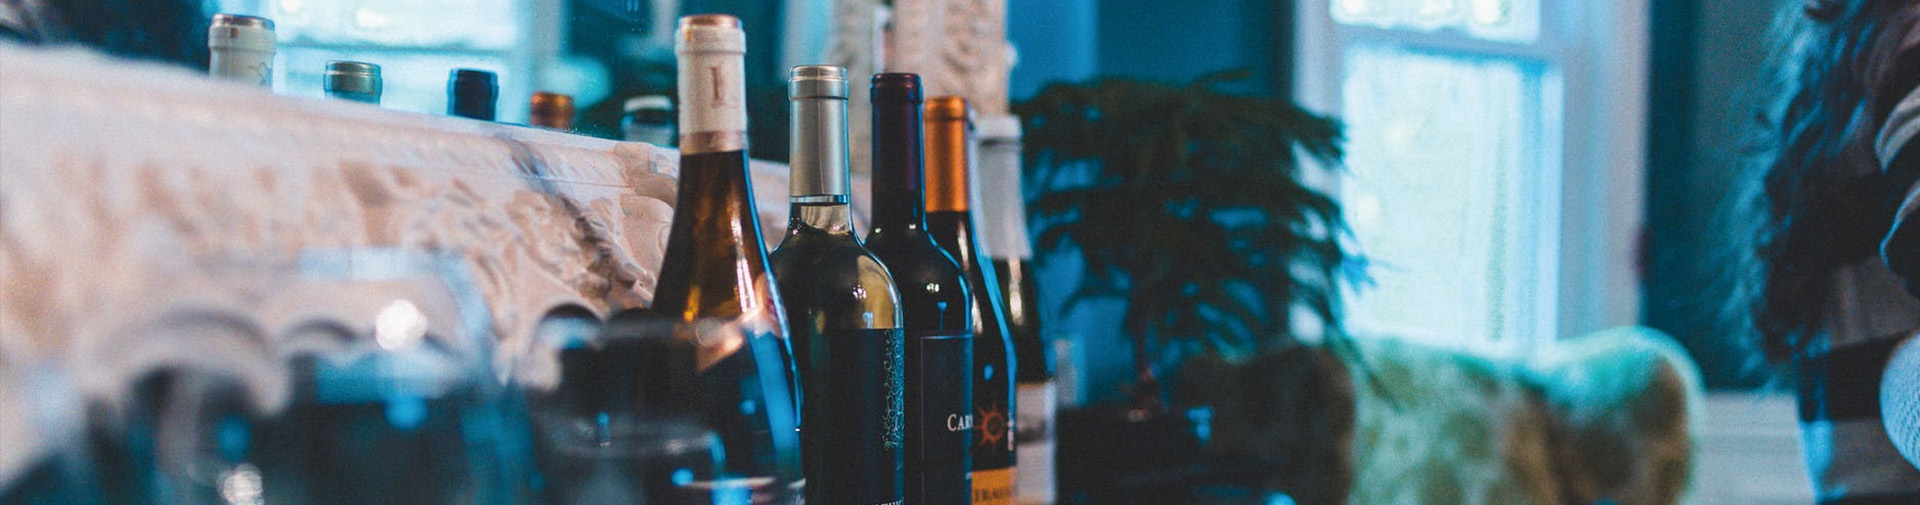 法国葡萄酒批发价格_法国葡萄酒、香槟多少钱-福莱沃酒业广州有限公司